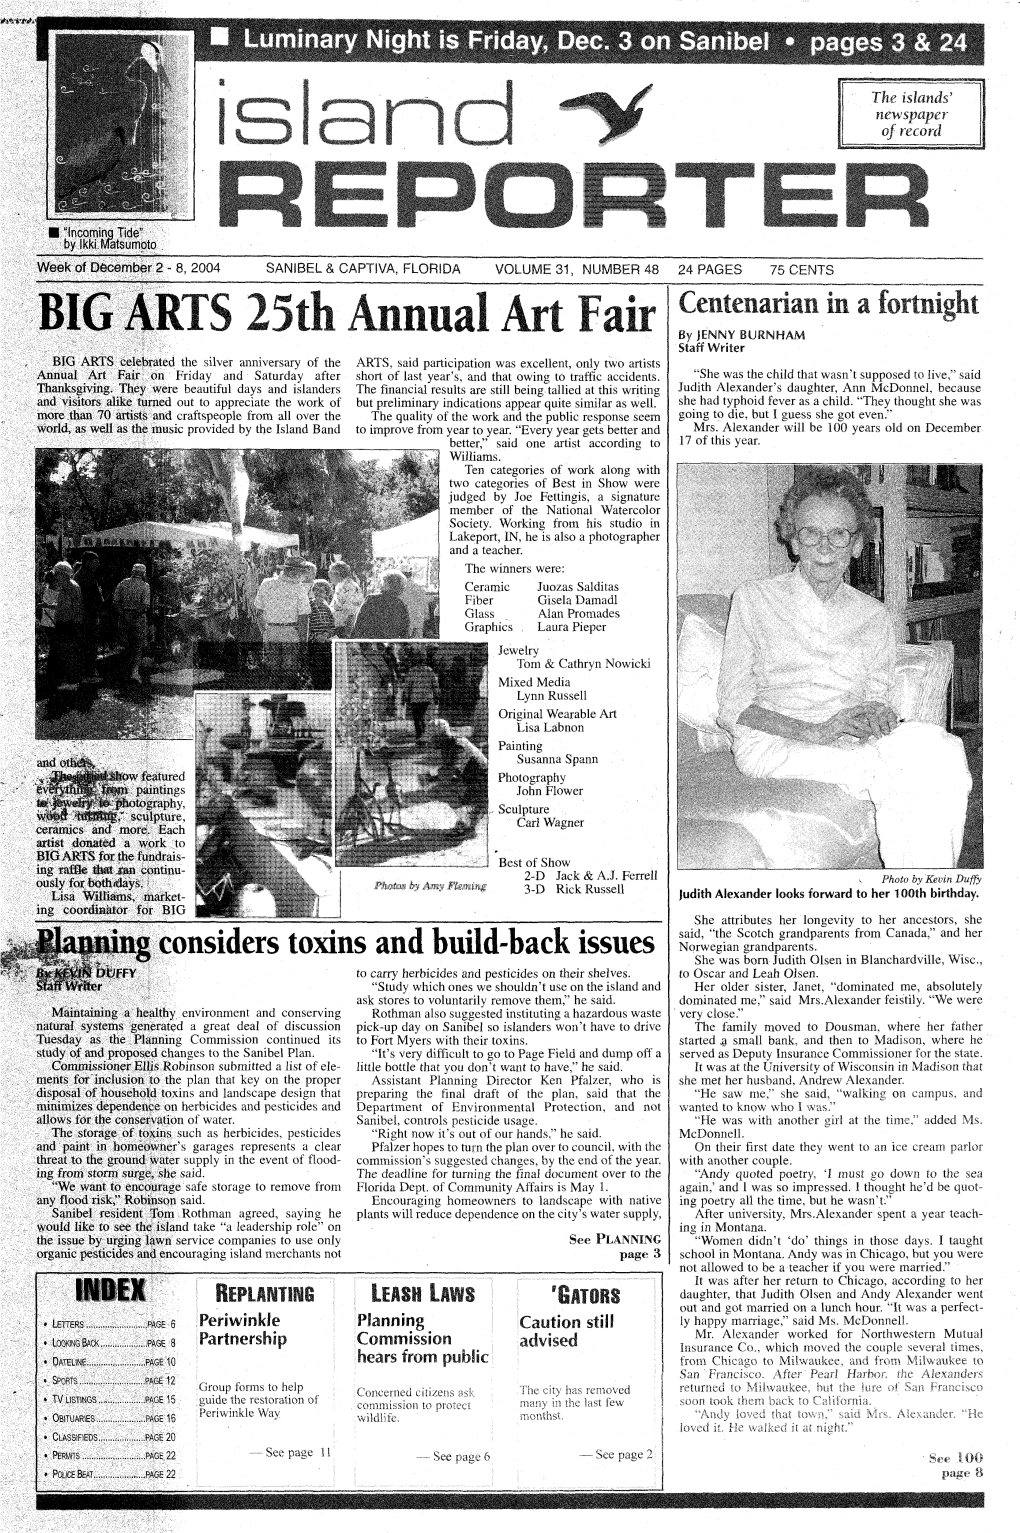 BIG ARTS 25Th Annual Art Fair